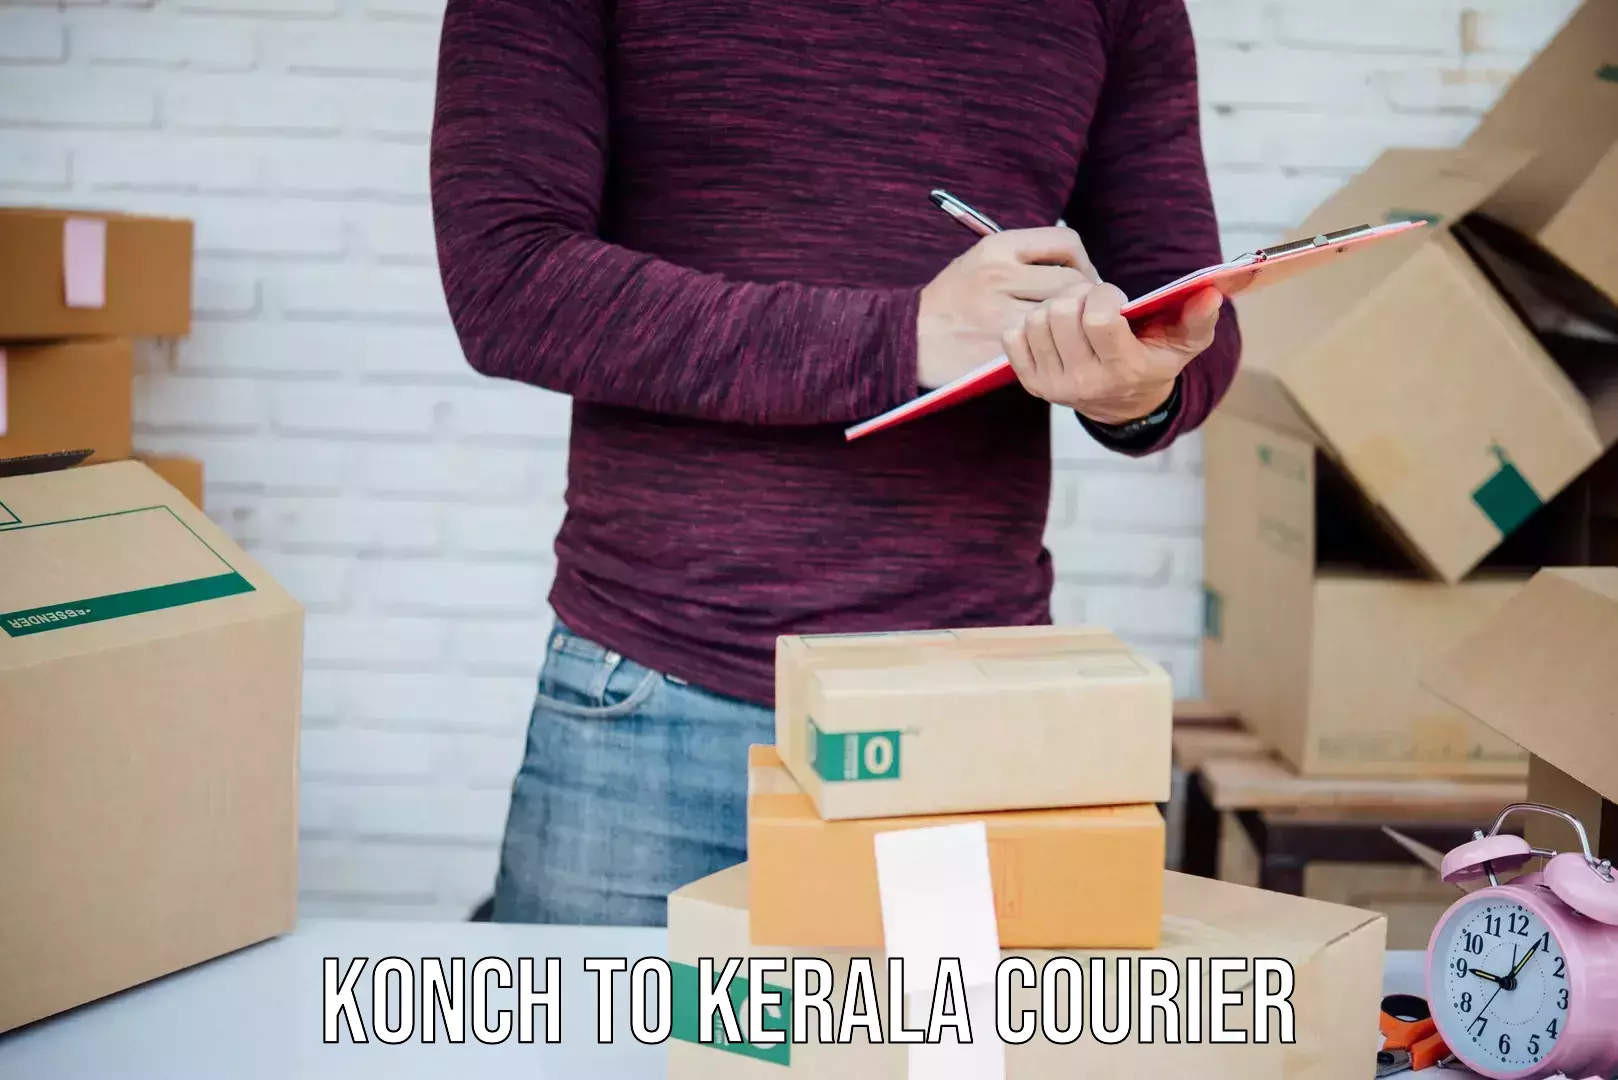 Courier service efficiency Konch to Kadanad